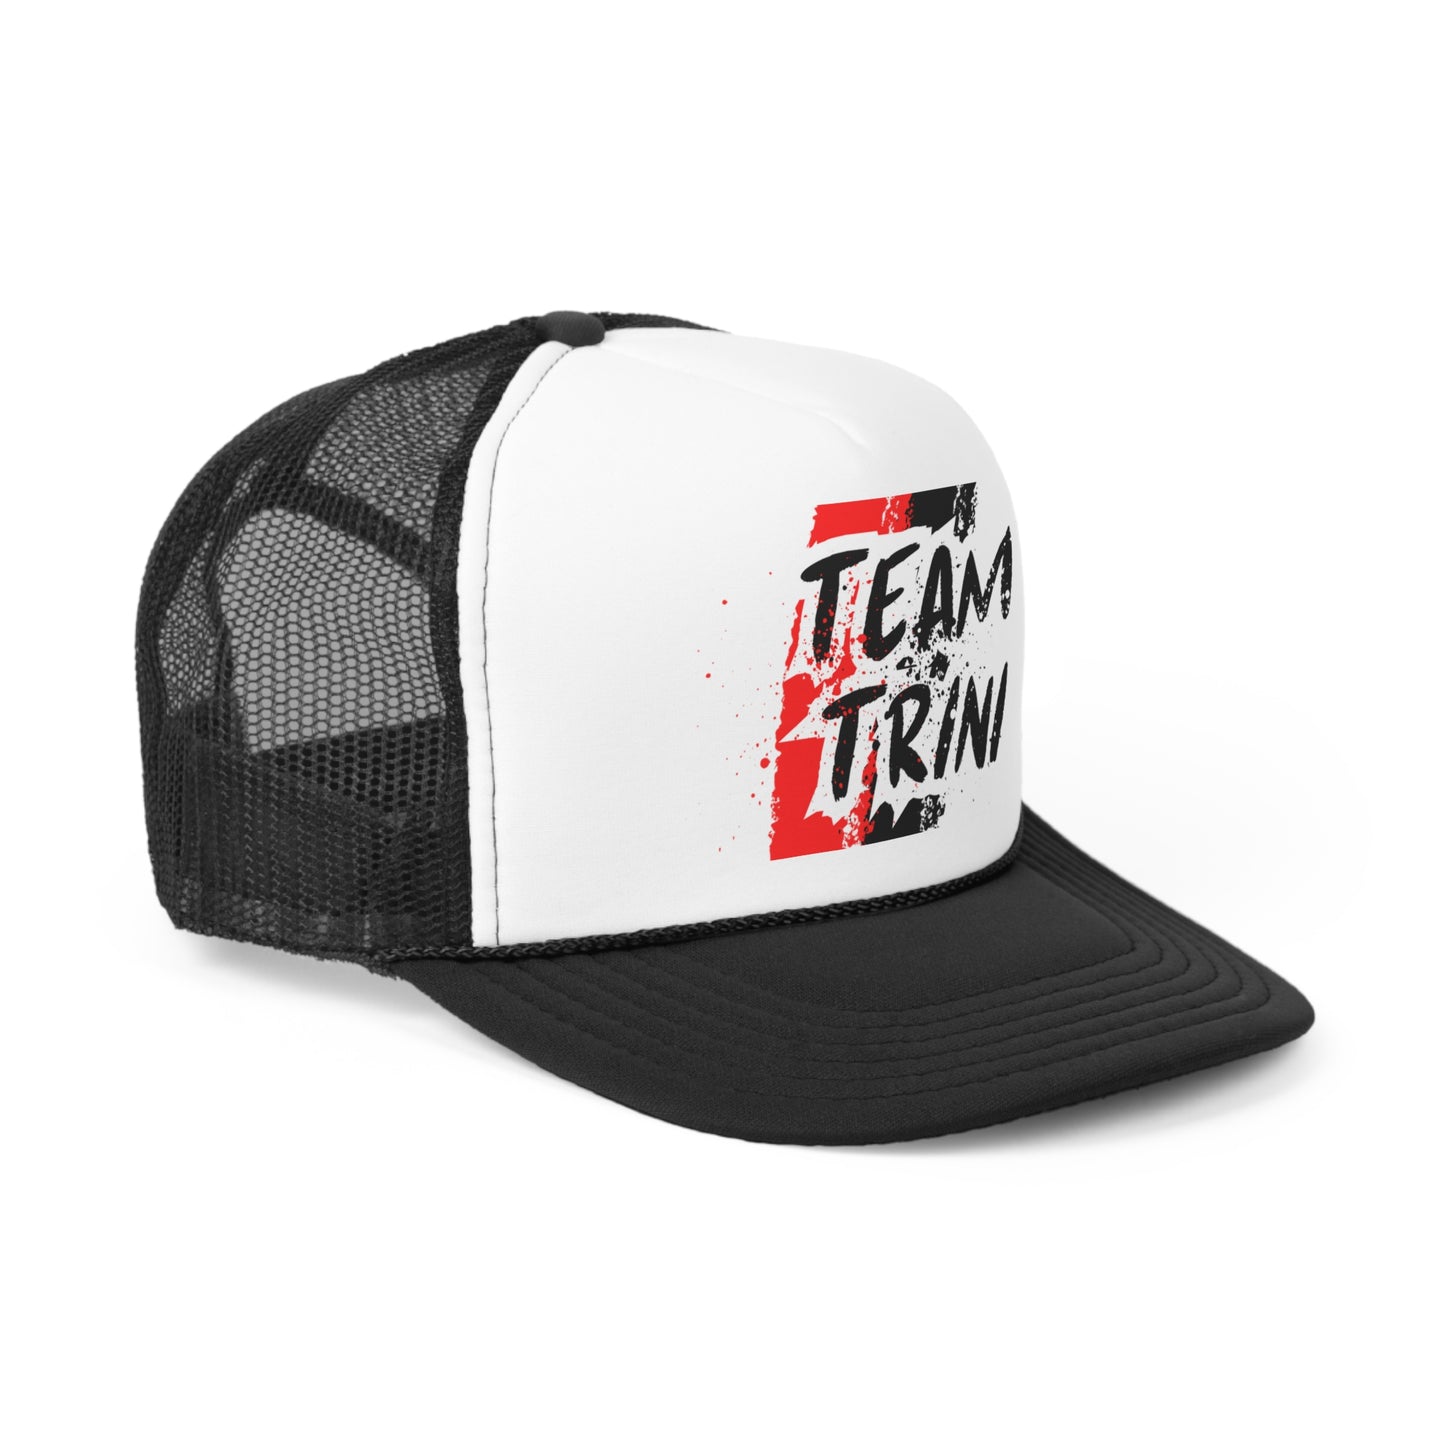 Team Trini Trucker Caps